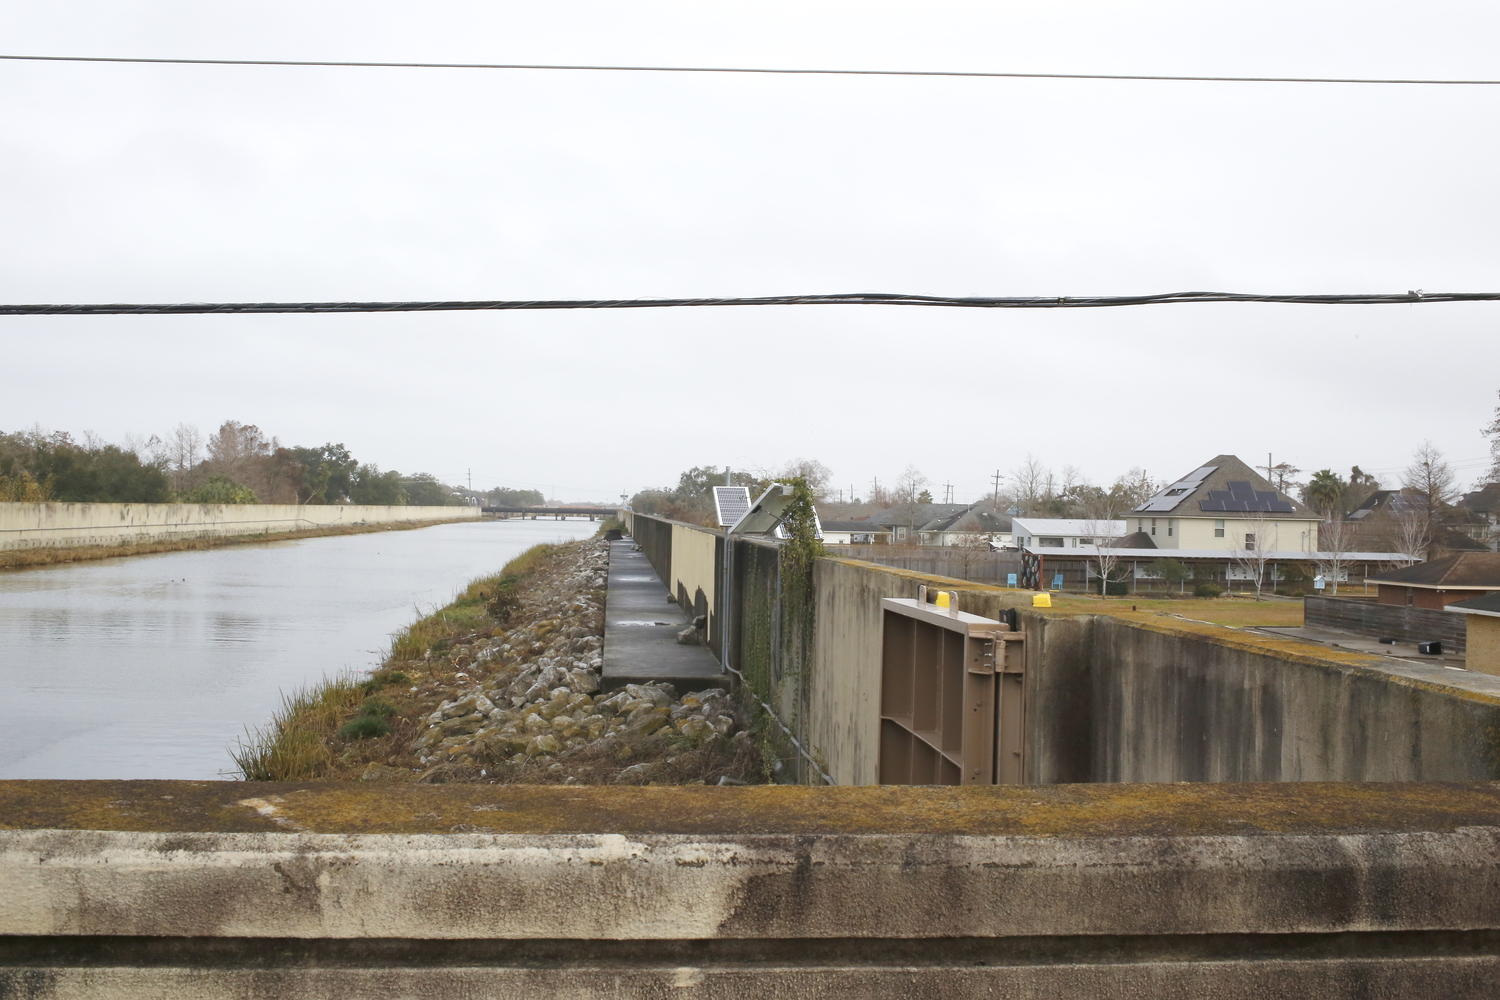 Le tour commence au London Avenue Canal, dans le quartier de Gentilly où une brèche s’est ouverte dans la digue. A l’origine, les canaux de La Nouvelle-Orléans servent à évacuer l’eau des pluies et éviter les crues. En 2005, les digues ont cédé. Le canal est situé au-dessus du niveau des maisons et l’eau s’est déversée rapidement © Globe Reporters